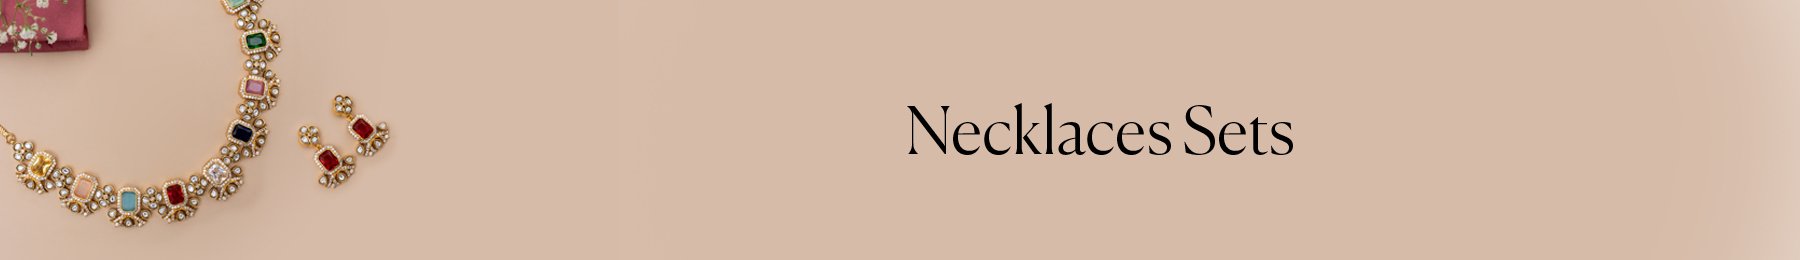 Necklace Sets